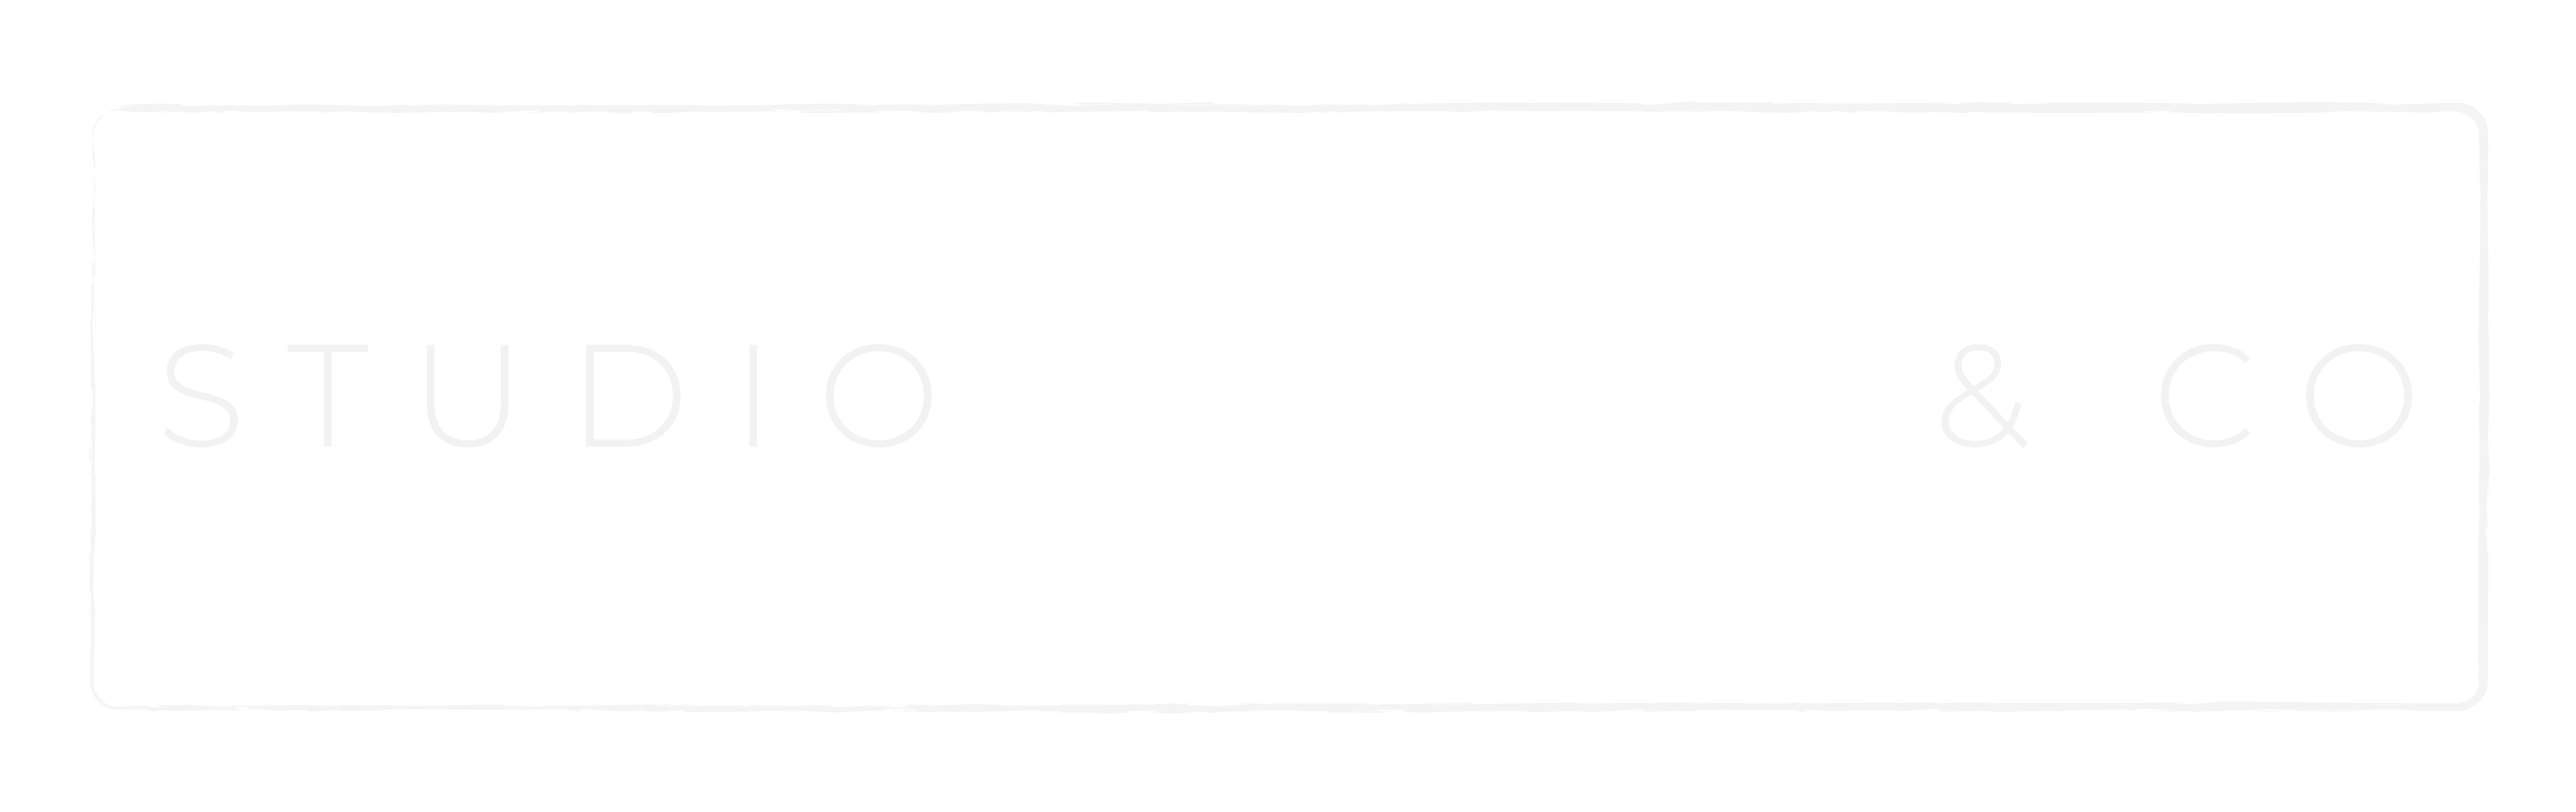 STUDIO VAN DE VEN & CO